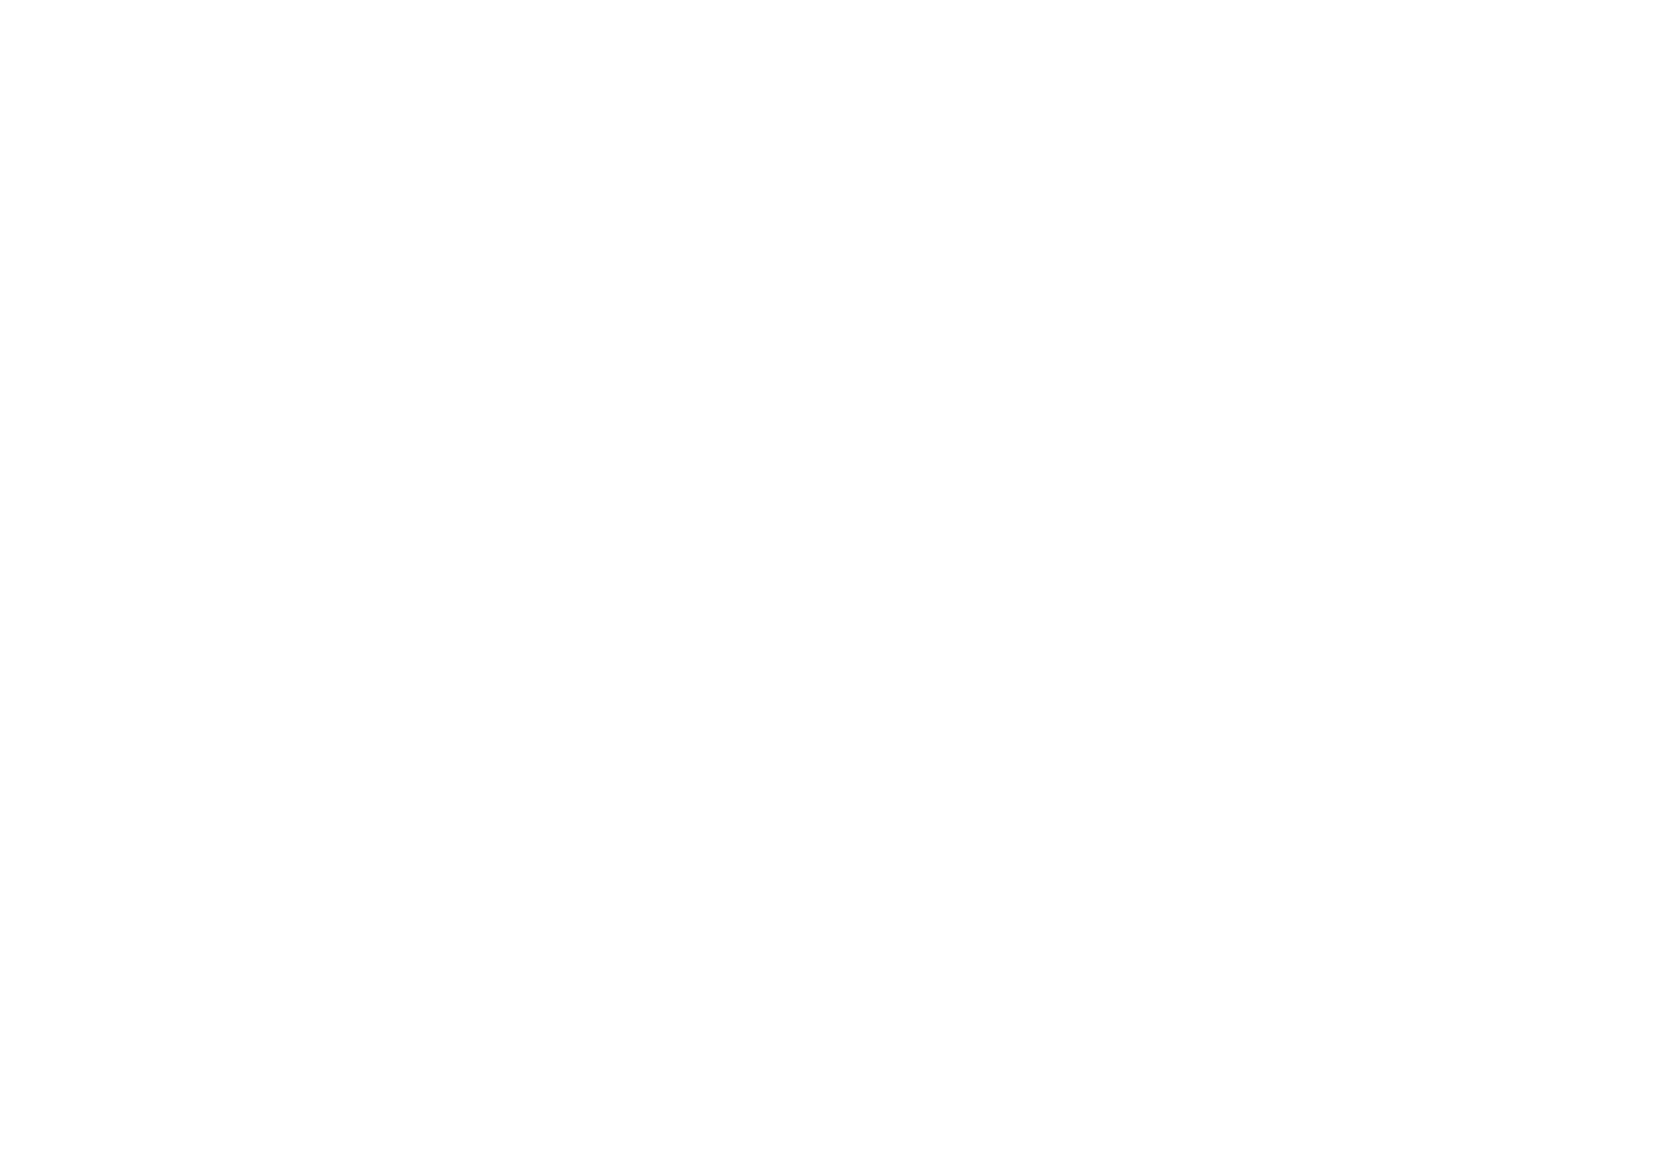 Охранное поле логотипа - Брендбук сети медицинских клиник "Целитель"